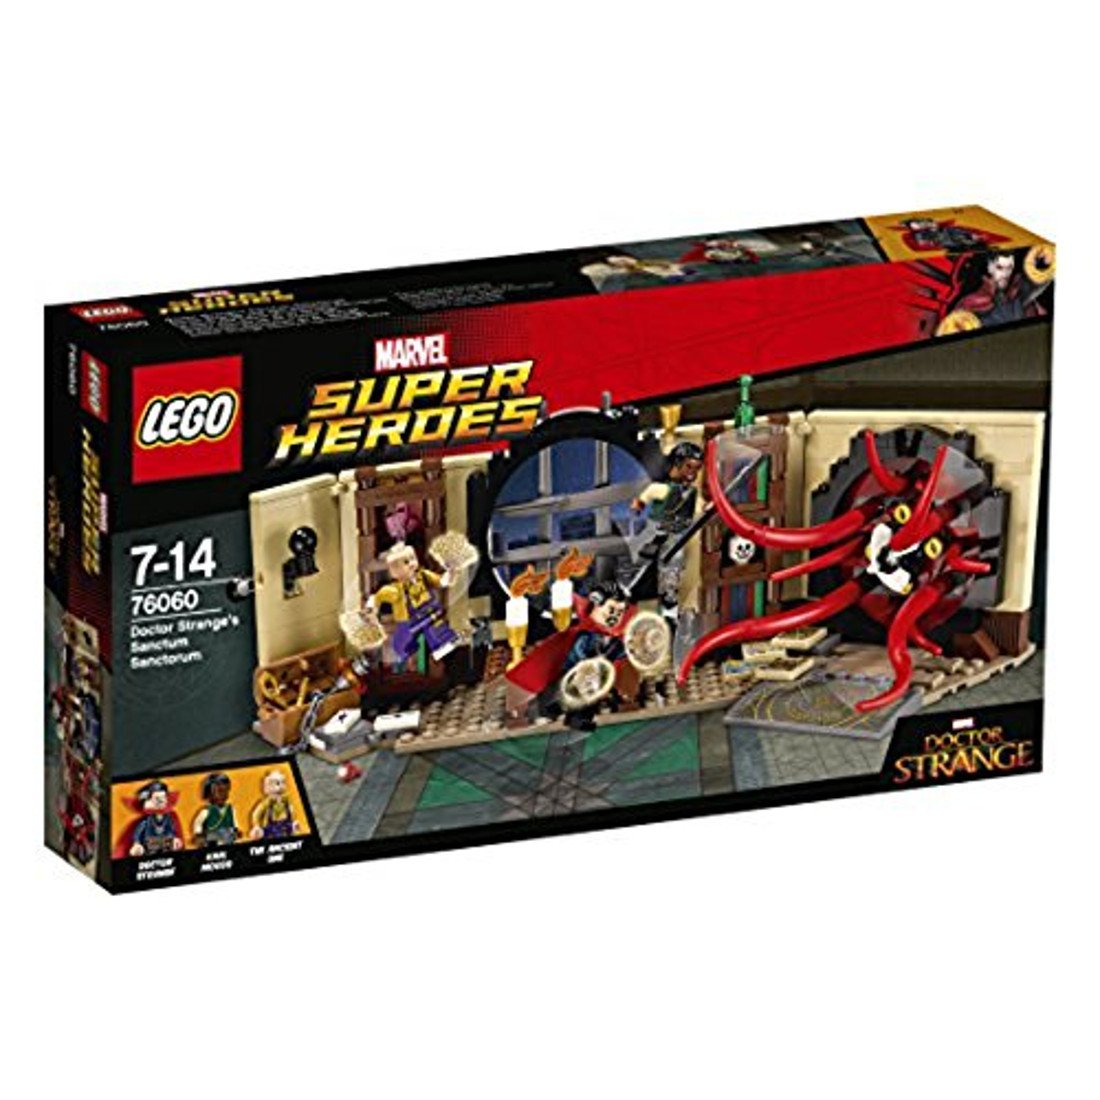 LEGO Marvel Super Heroes: 76060 Doctor Strange's Sanctum Sanc Bed by SELECT